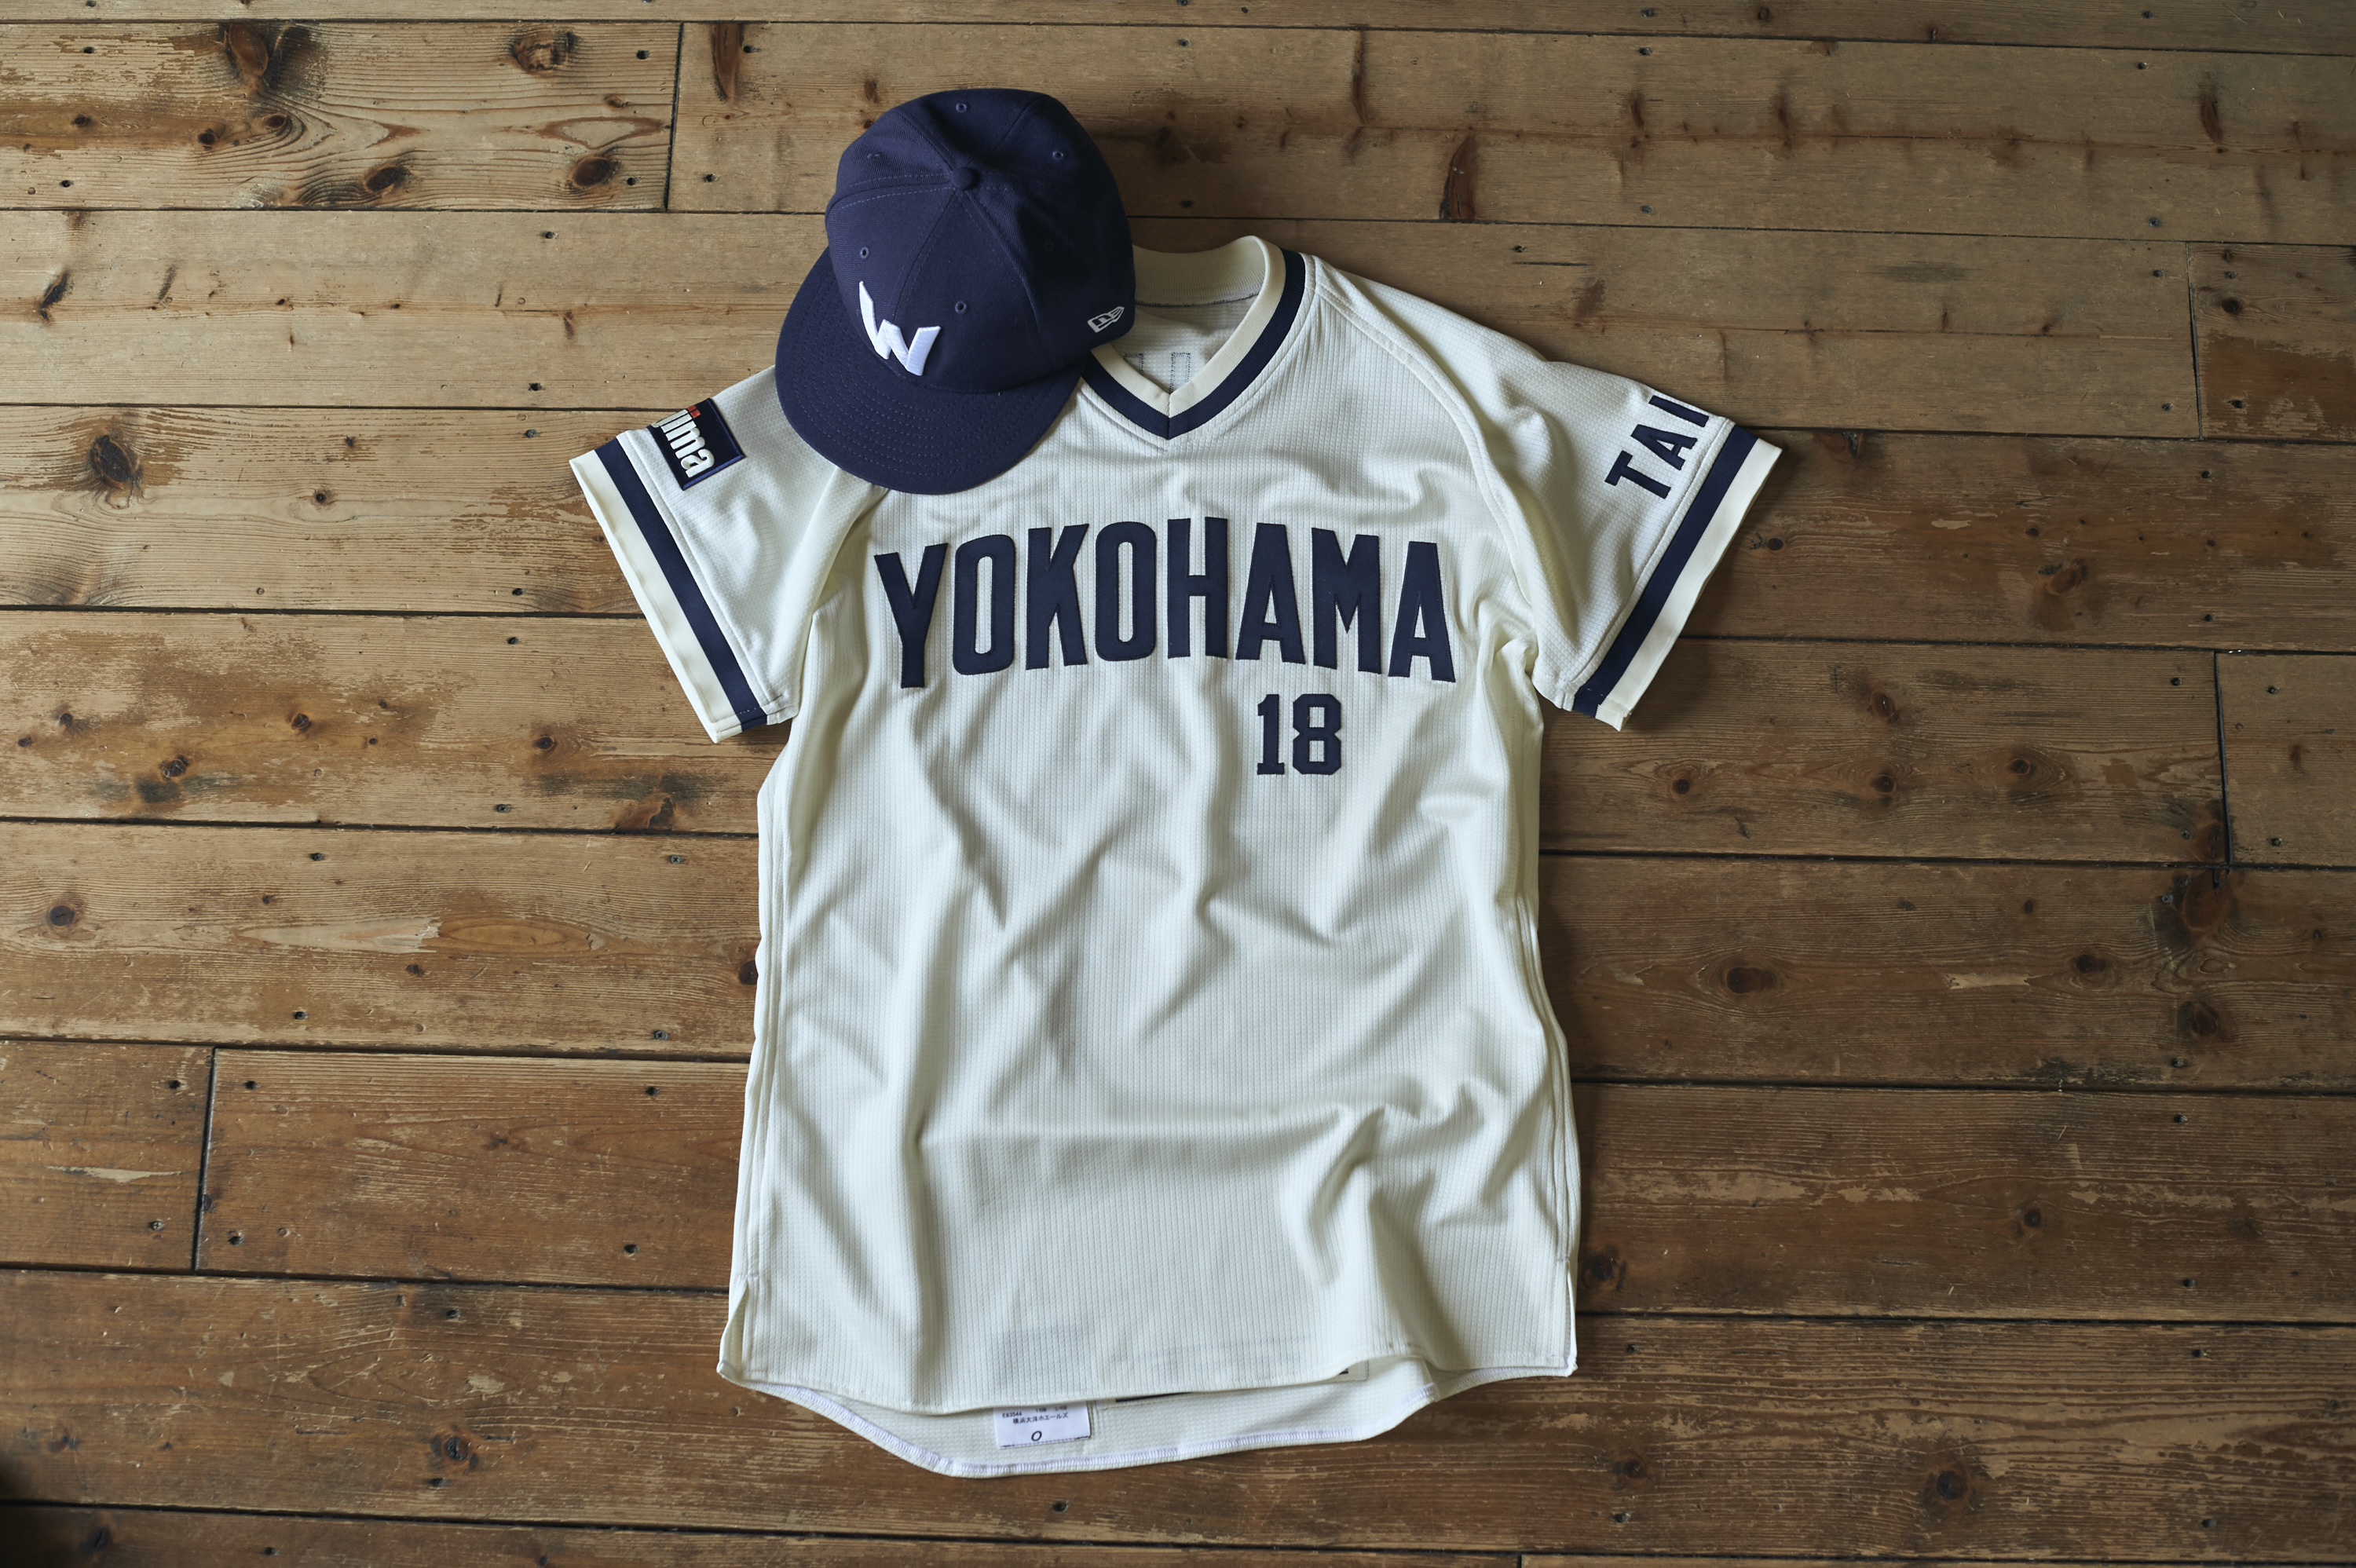 Dena初の試み 横浜のプロ野球球団誕生の 象徴 が復活 ホエールズユニの復刻販売も実施 ベースボールチャンネル Baseball Channel